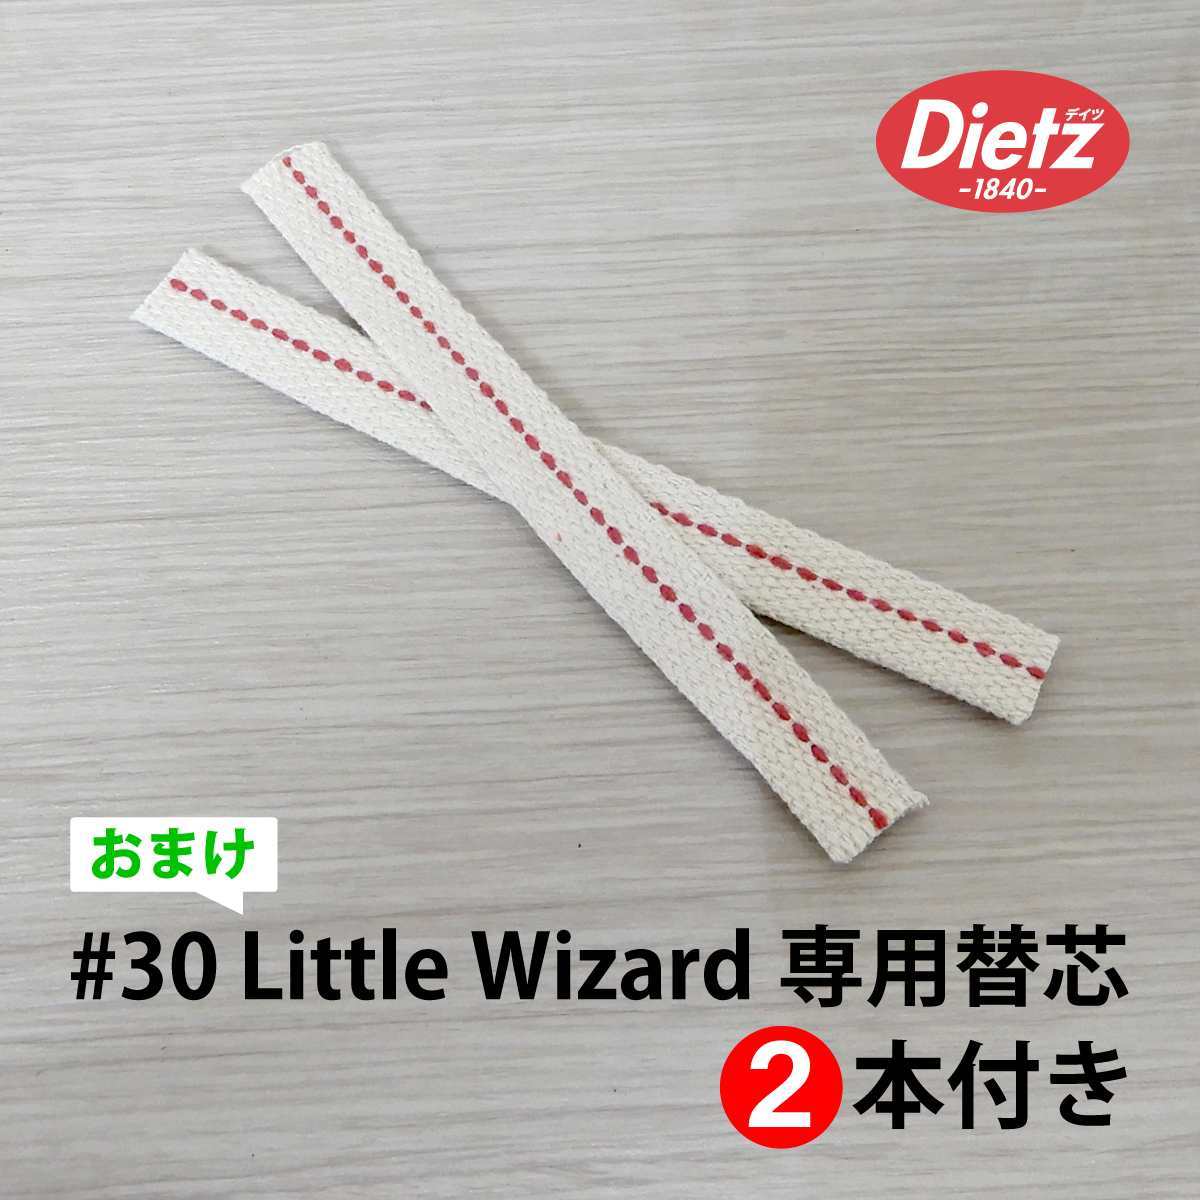 大セール【送料無料】新品 Dietz #30 Little Wizard Oil Lantern - Grey Nickel Trim 替芯付 ◇デイツ グレー ニッケル ハリケーンランタンの画像10